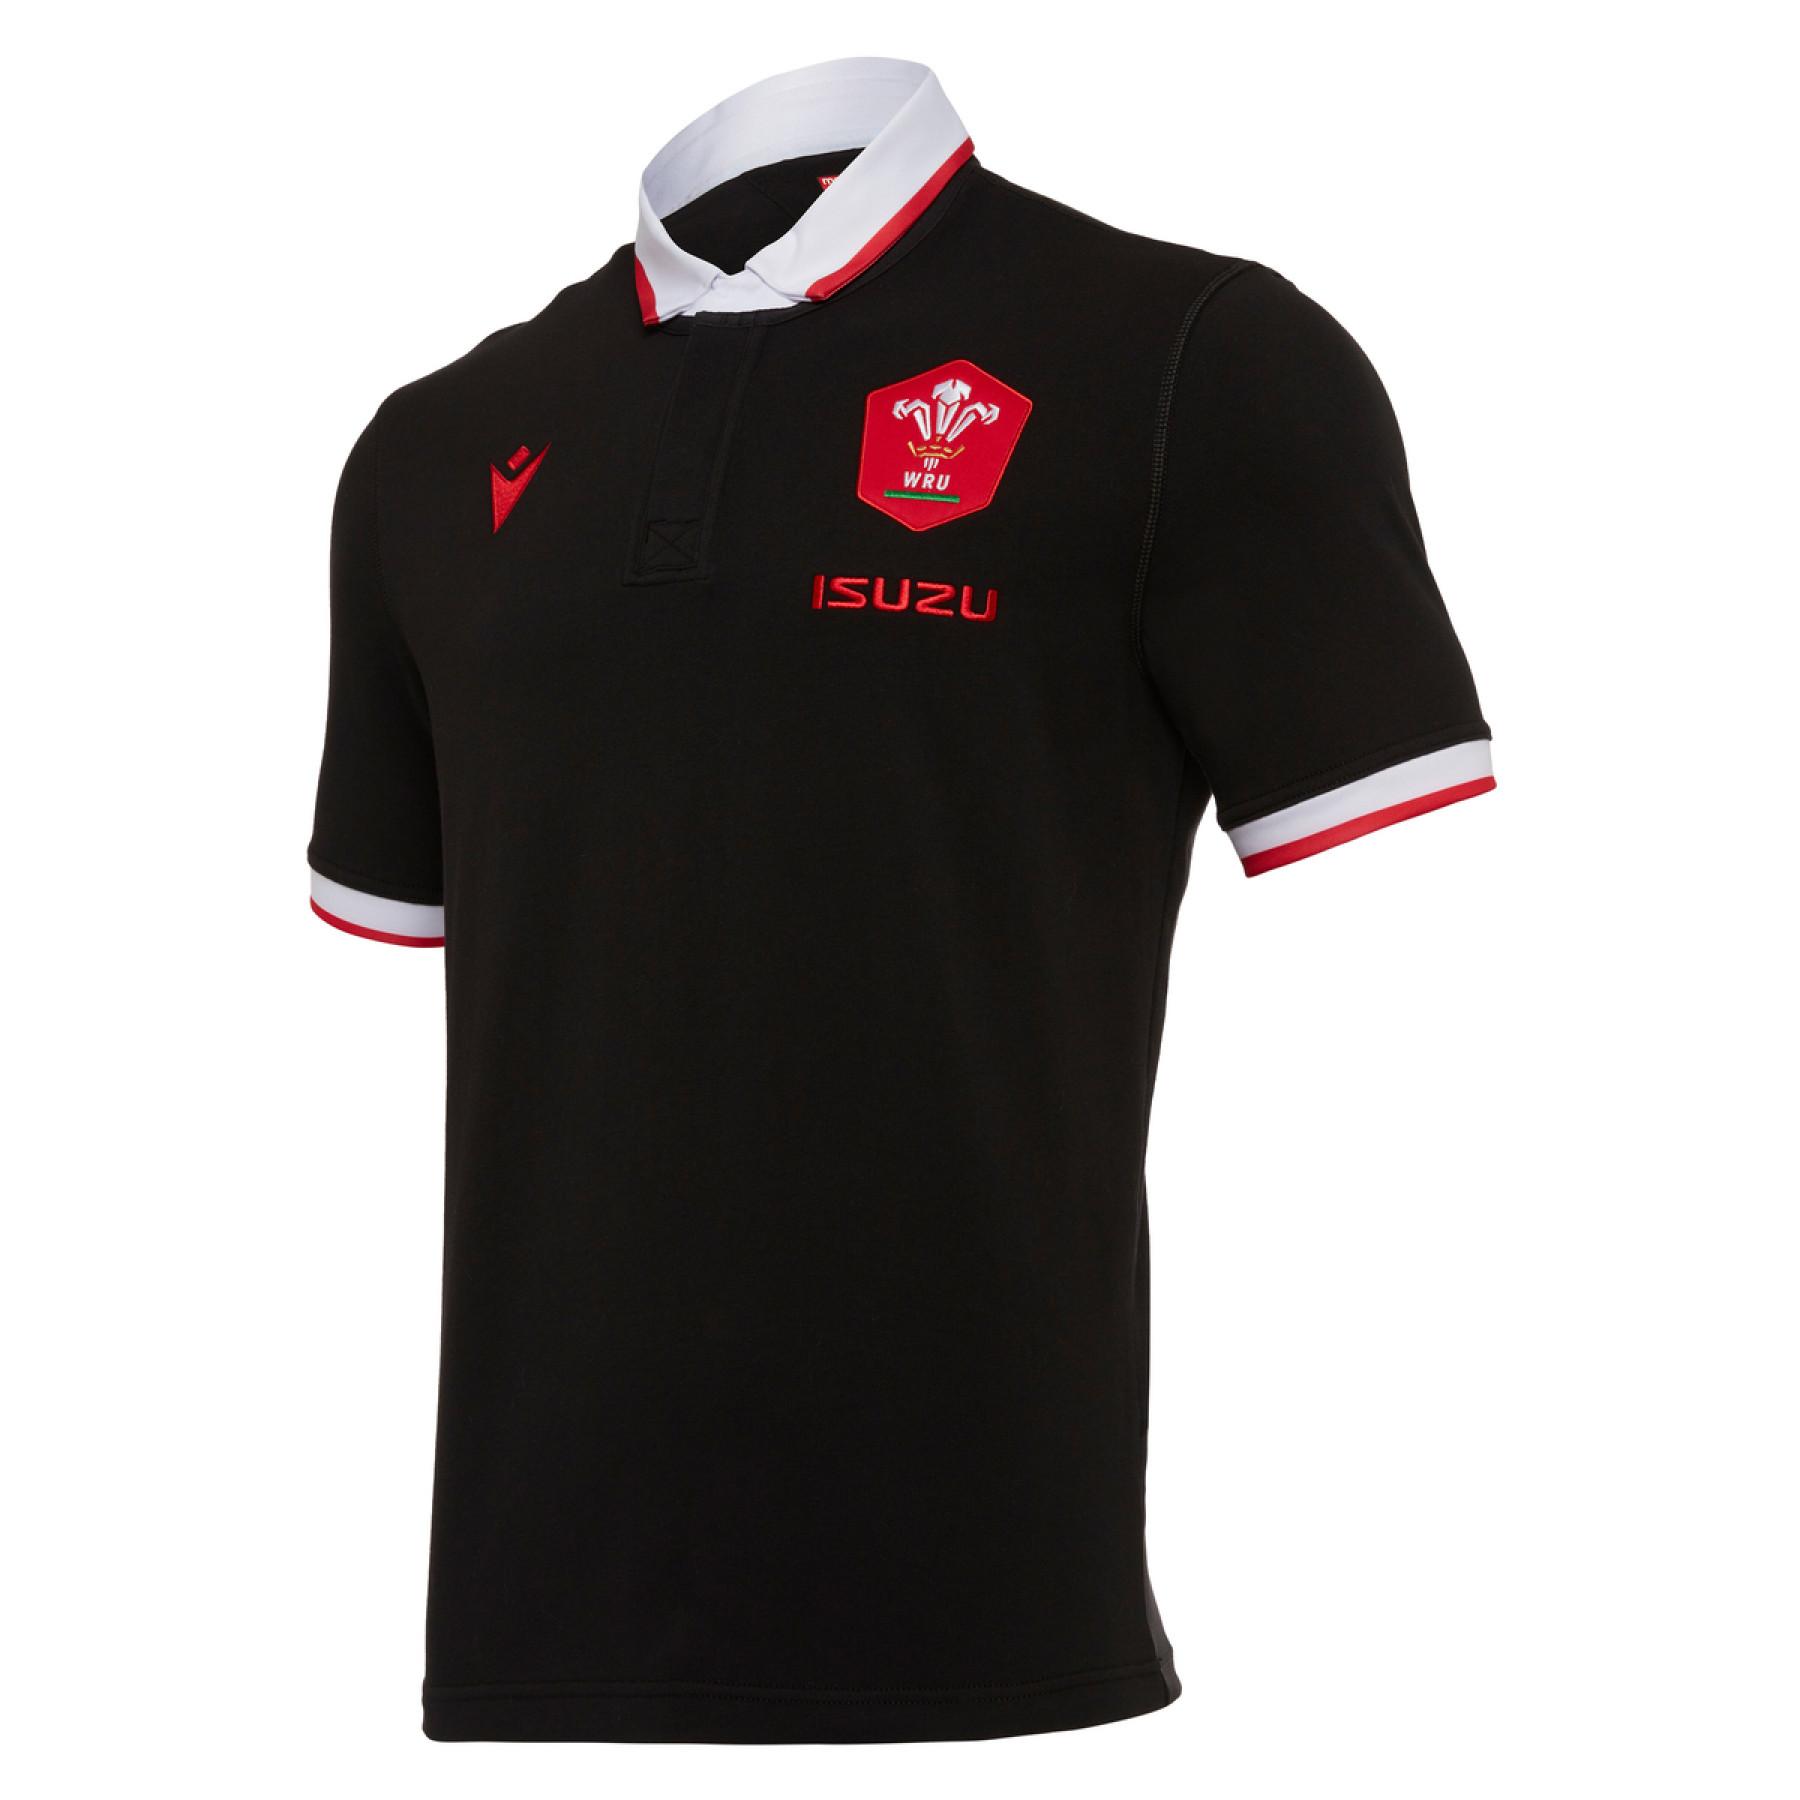 Katoen outdoor jersey Pays de galles rugby 2020/21